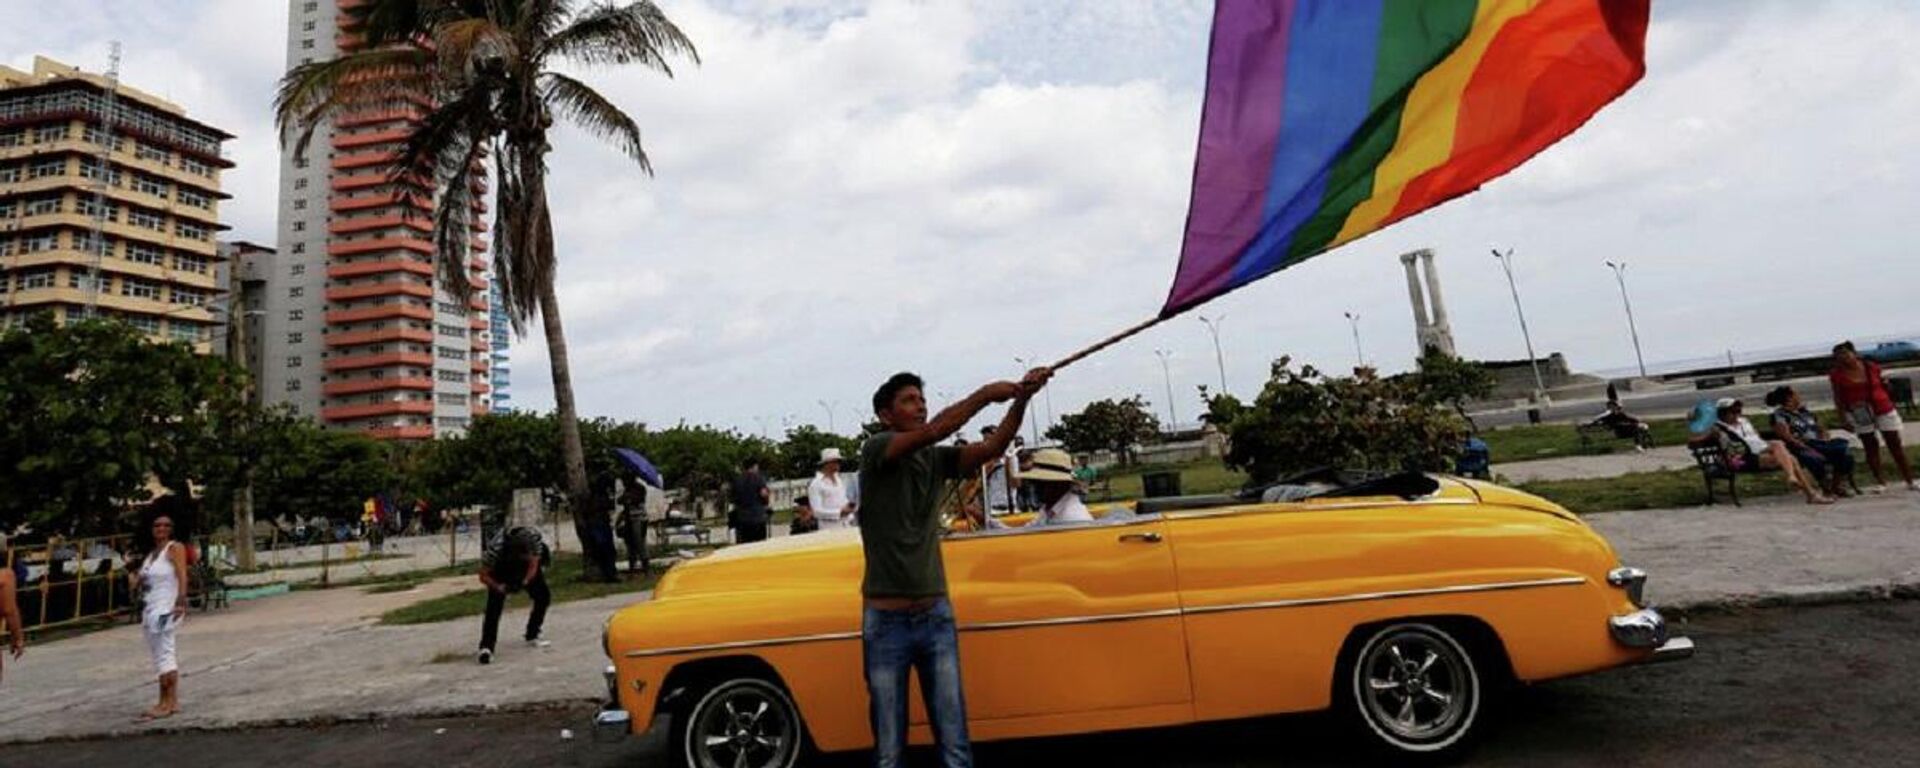 Küba - LGBT - Sputnik Türkiye, 1920, 14.02.2022